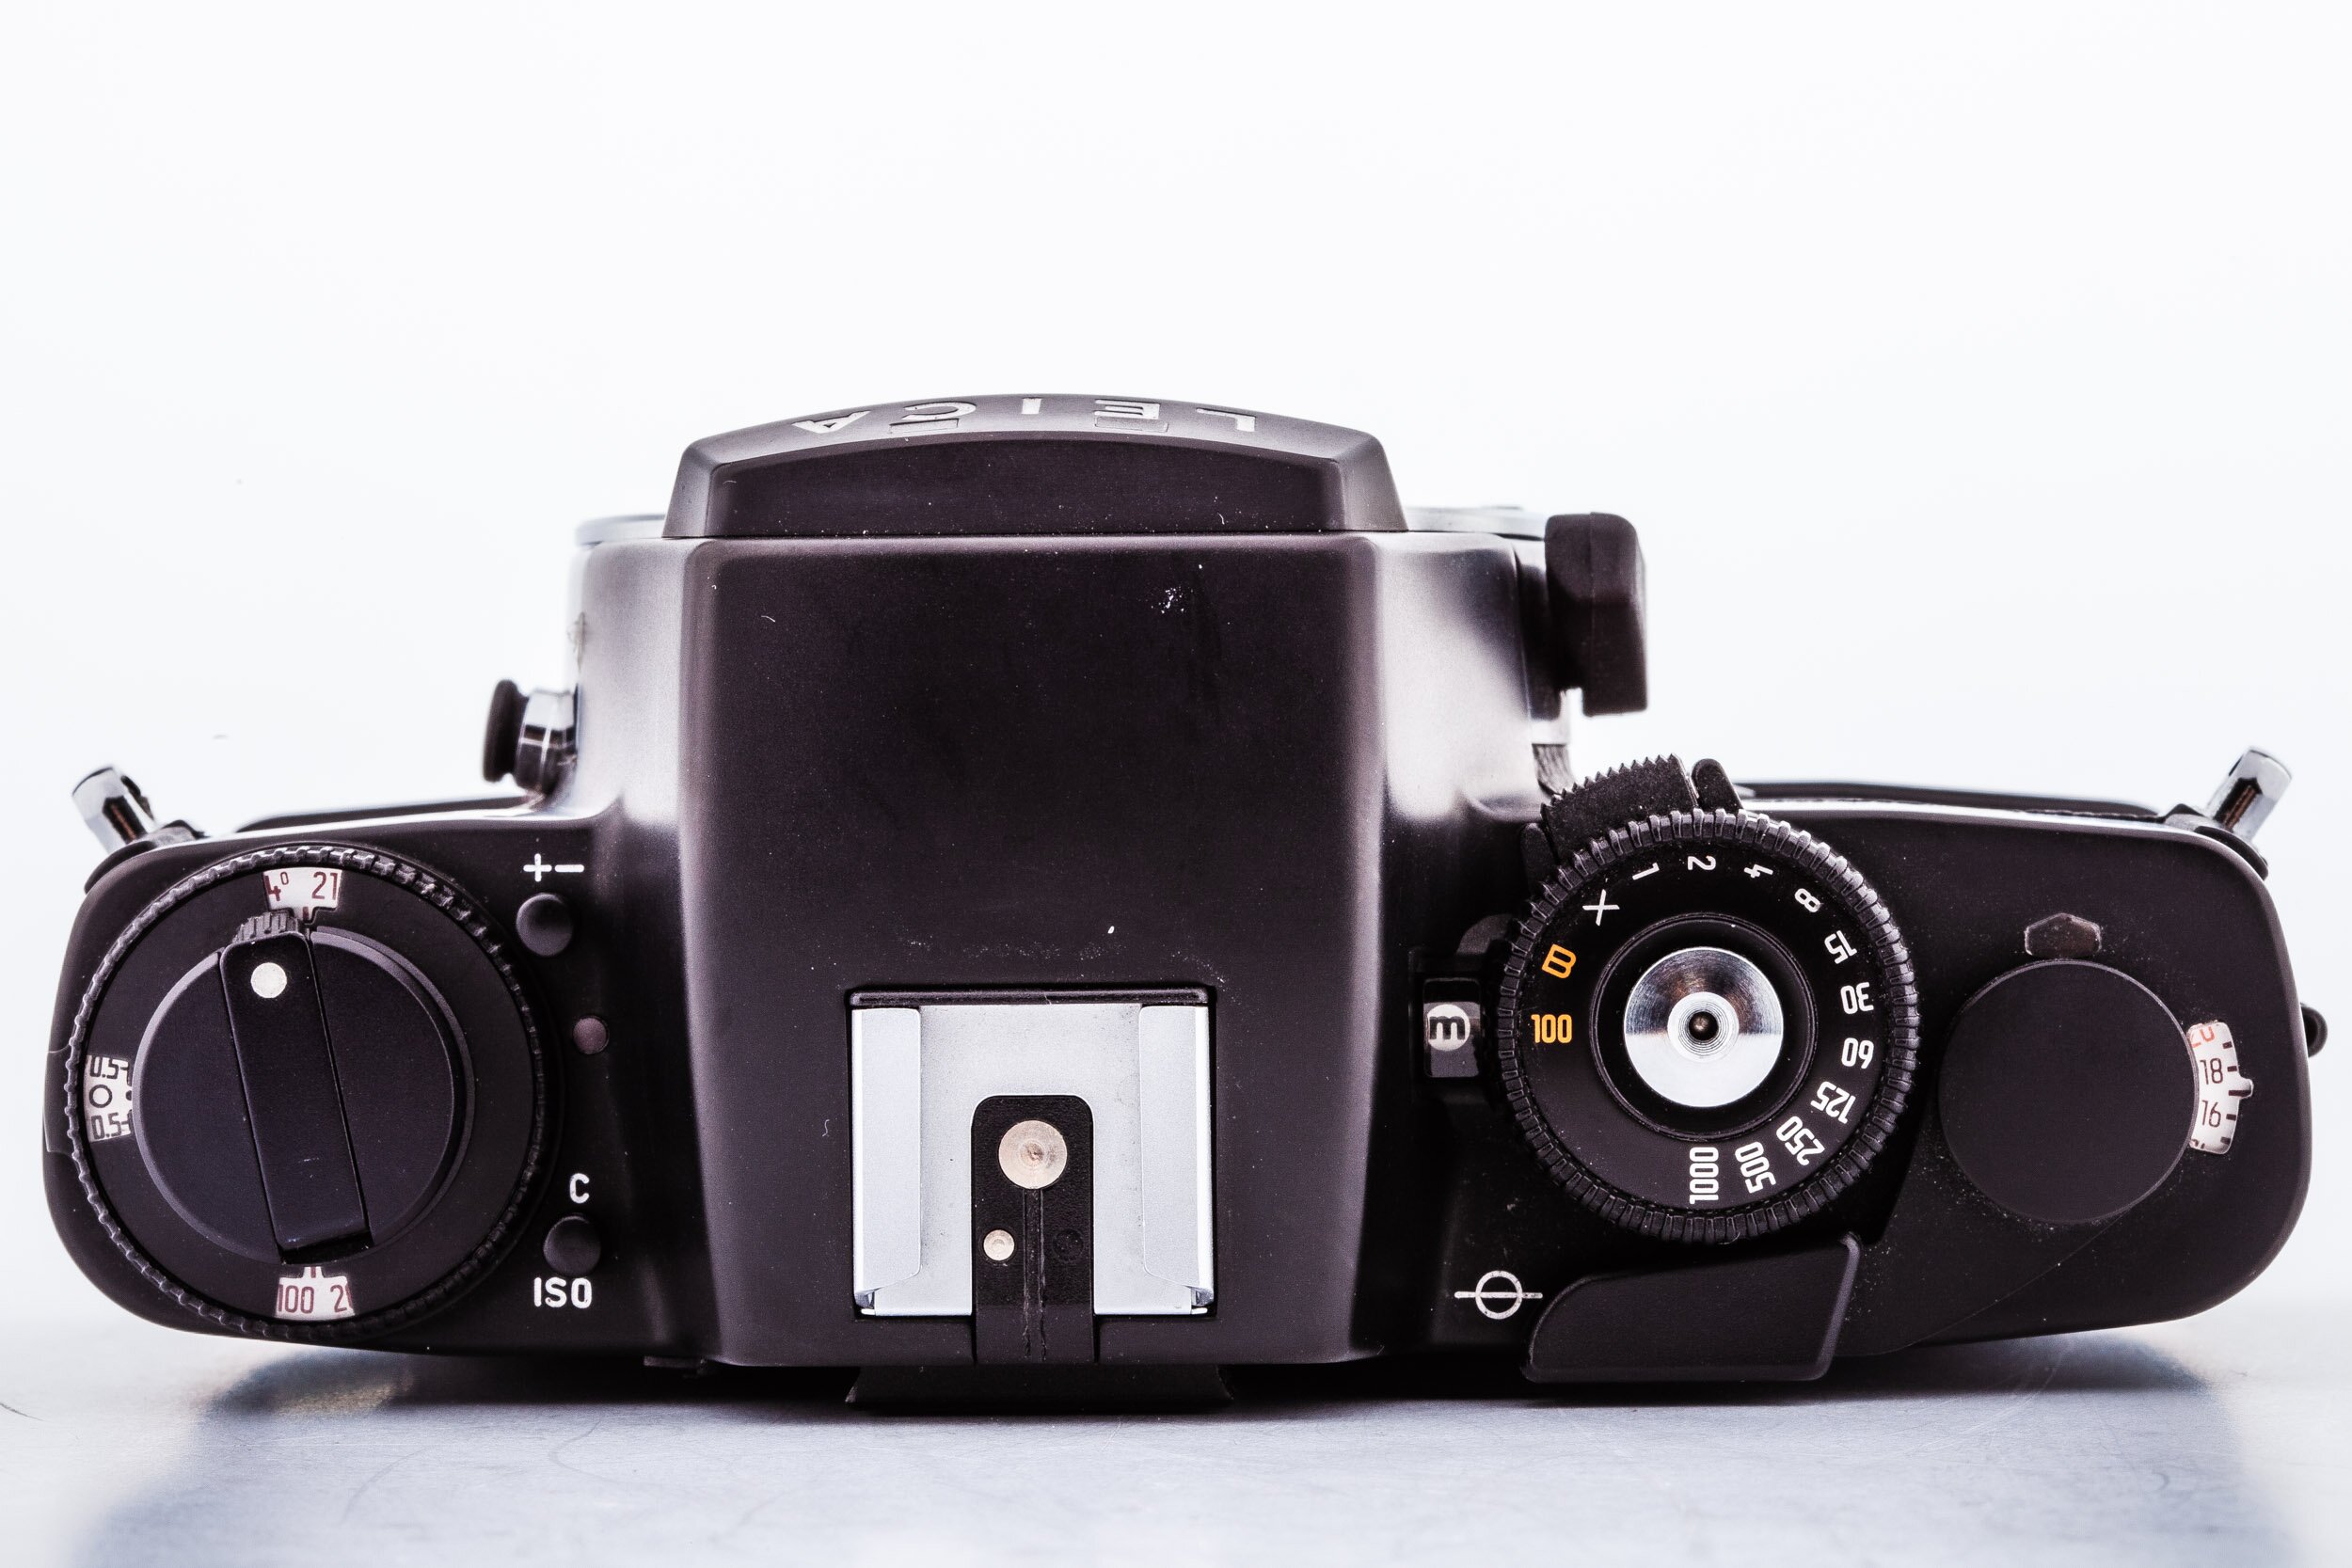 Leitz Leica R4 Body